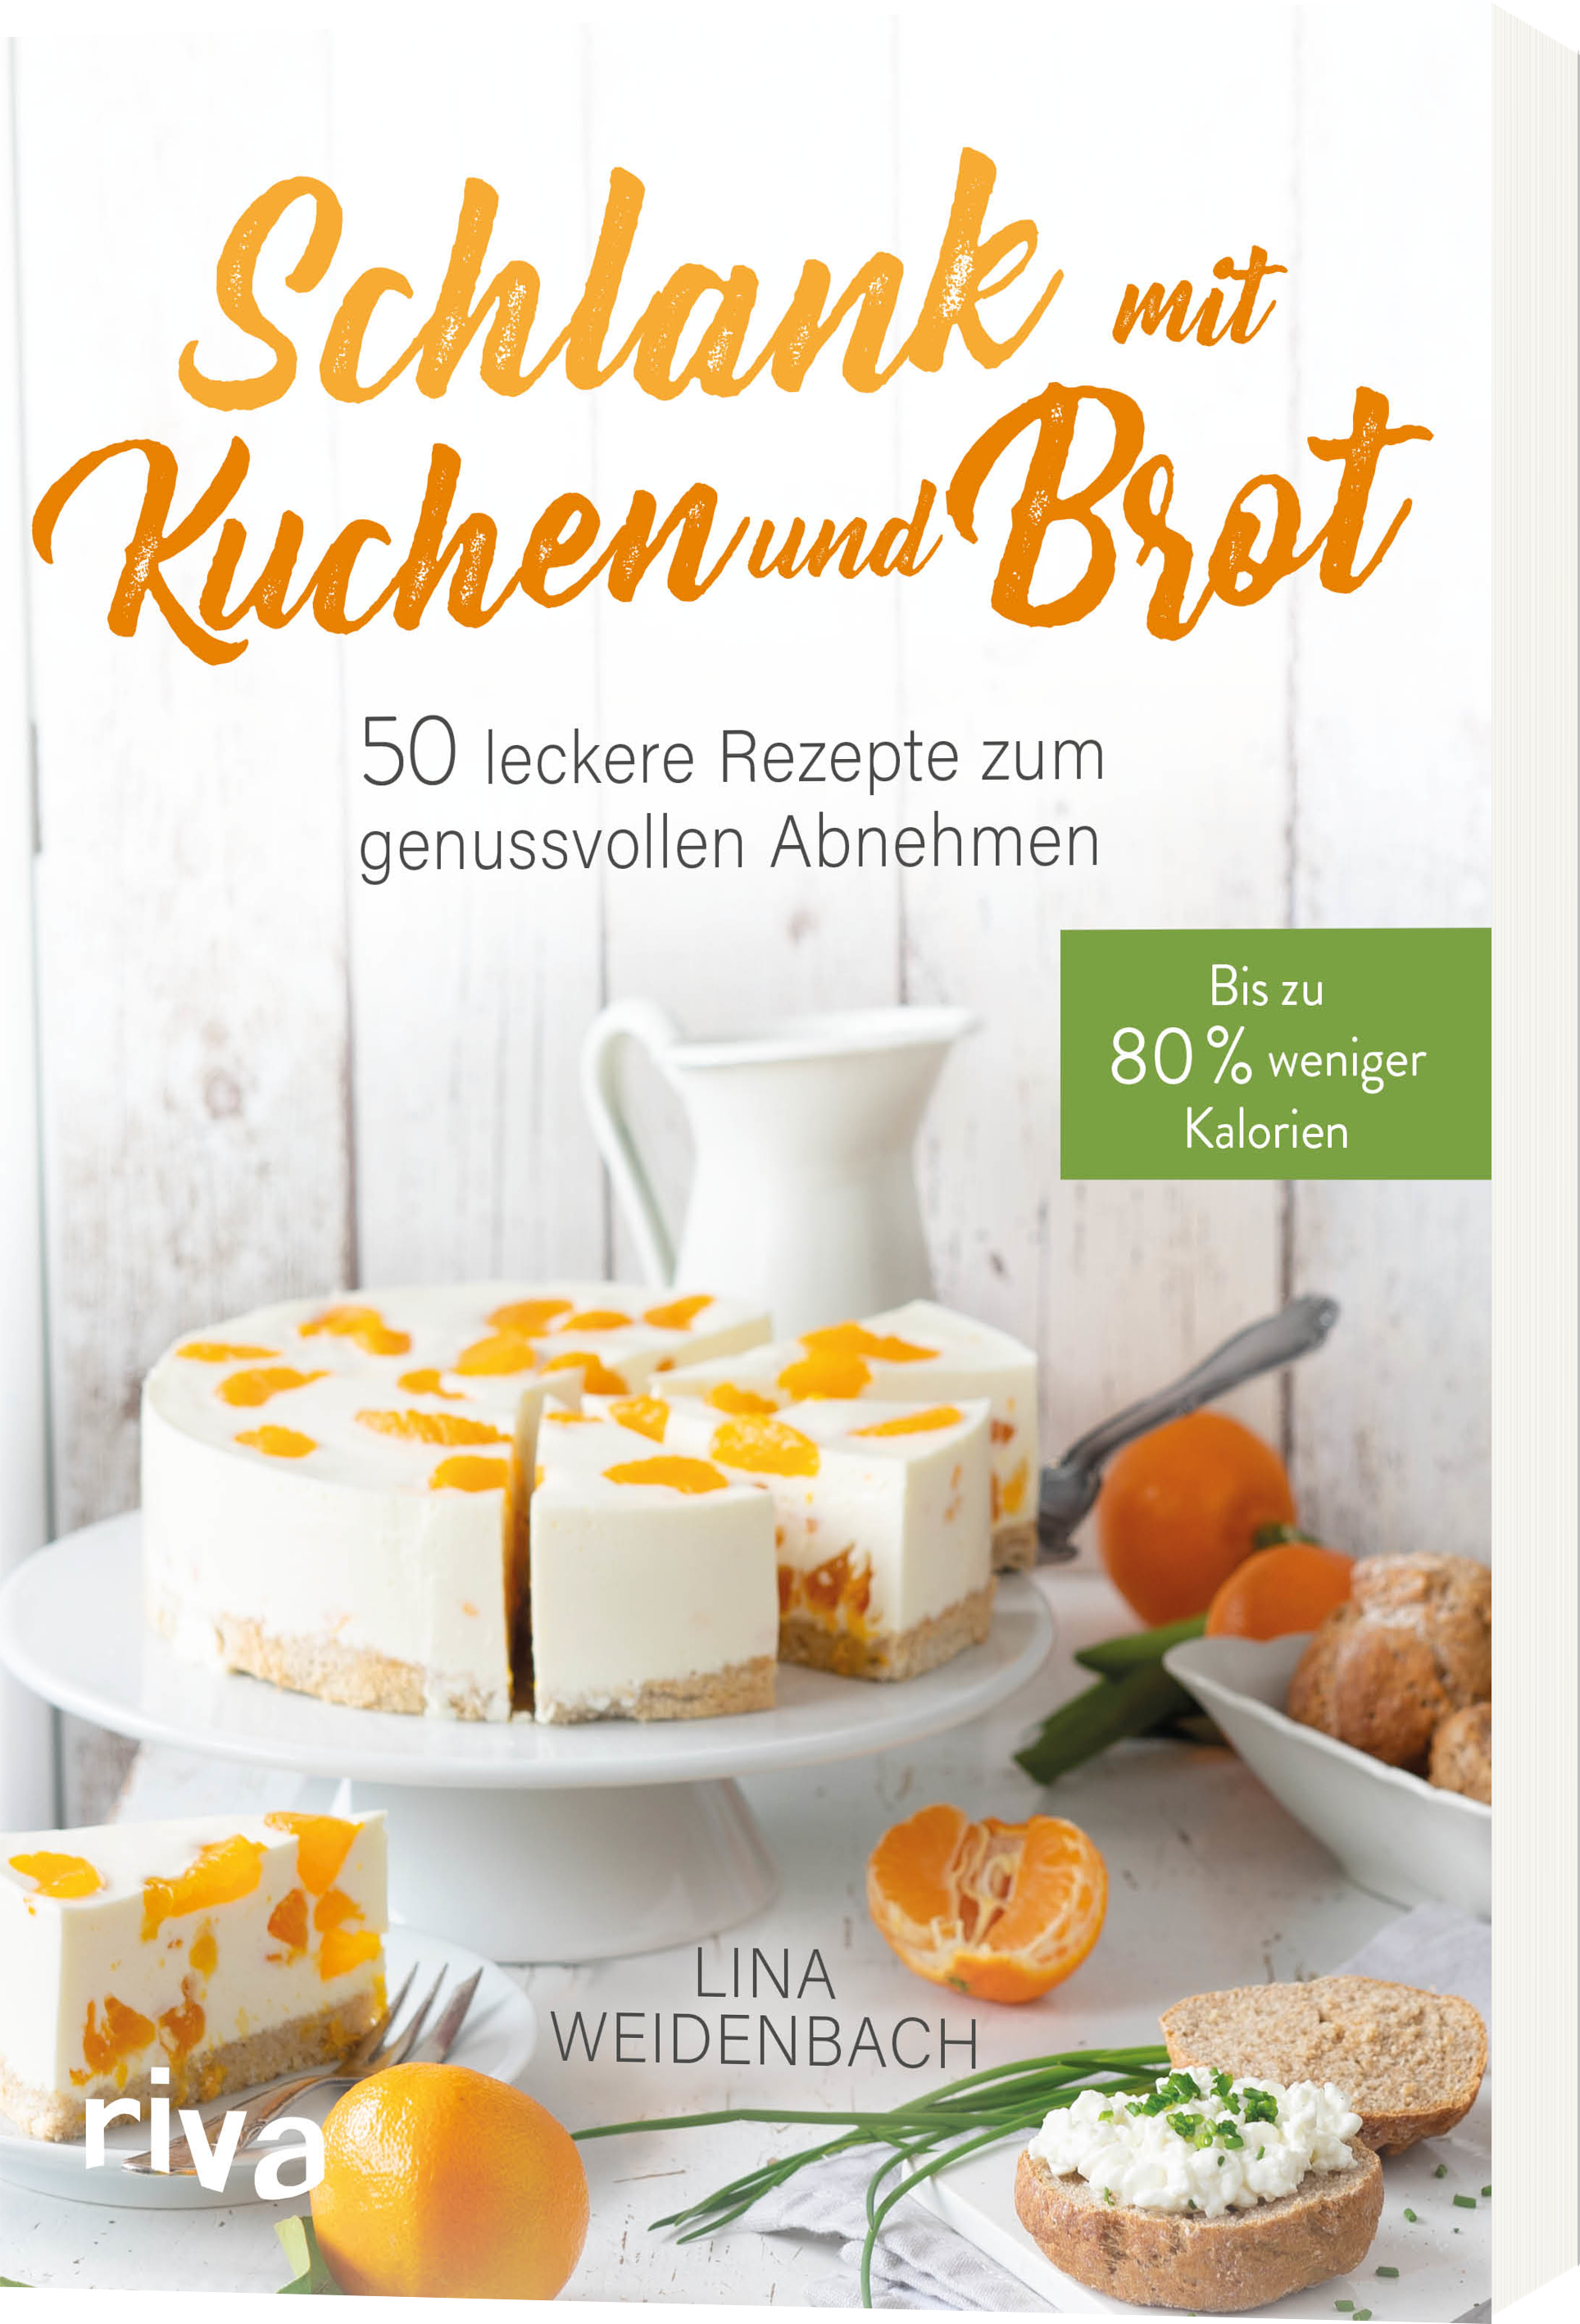 Schlank it Kuchen und Brot Bis zu 80% weniger Kalorien 50 leckere
Rezepte zu genussvollen Abnehen PDF Epub-Ebook